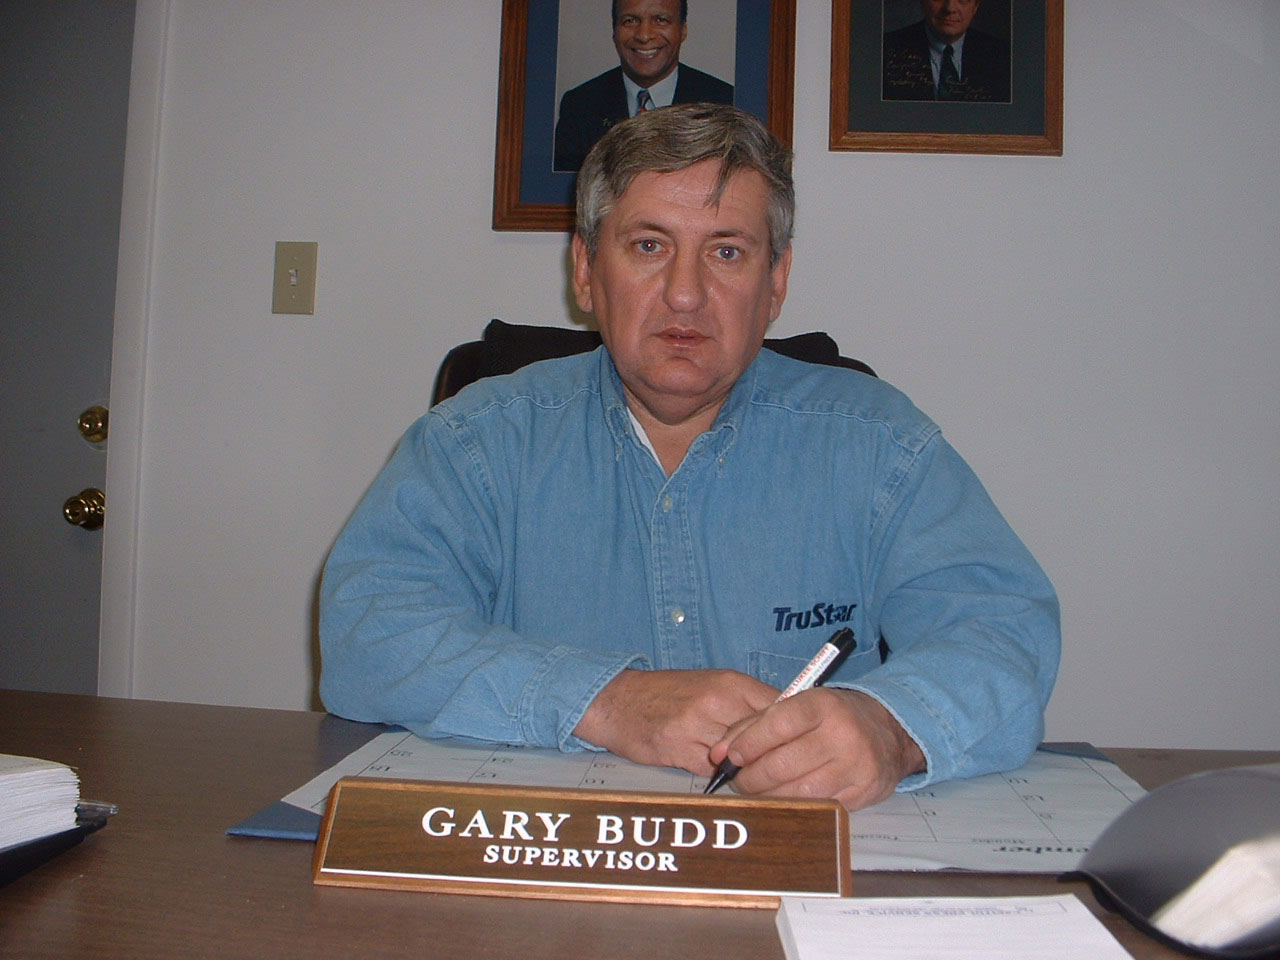 Supervisor, Gary Budd